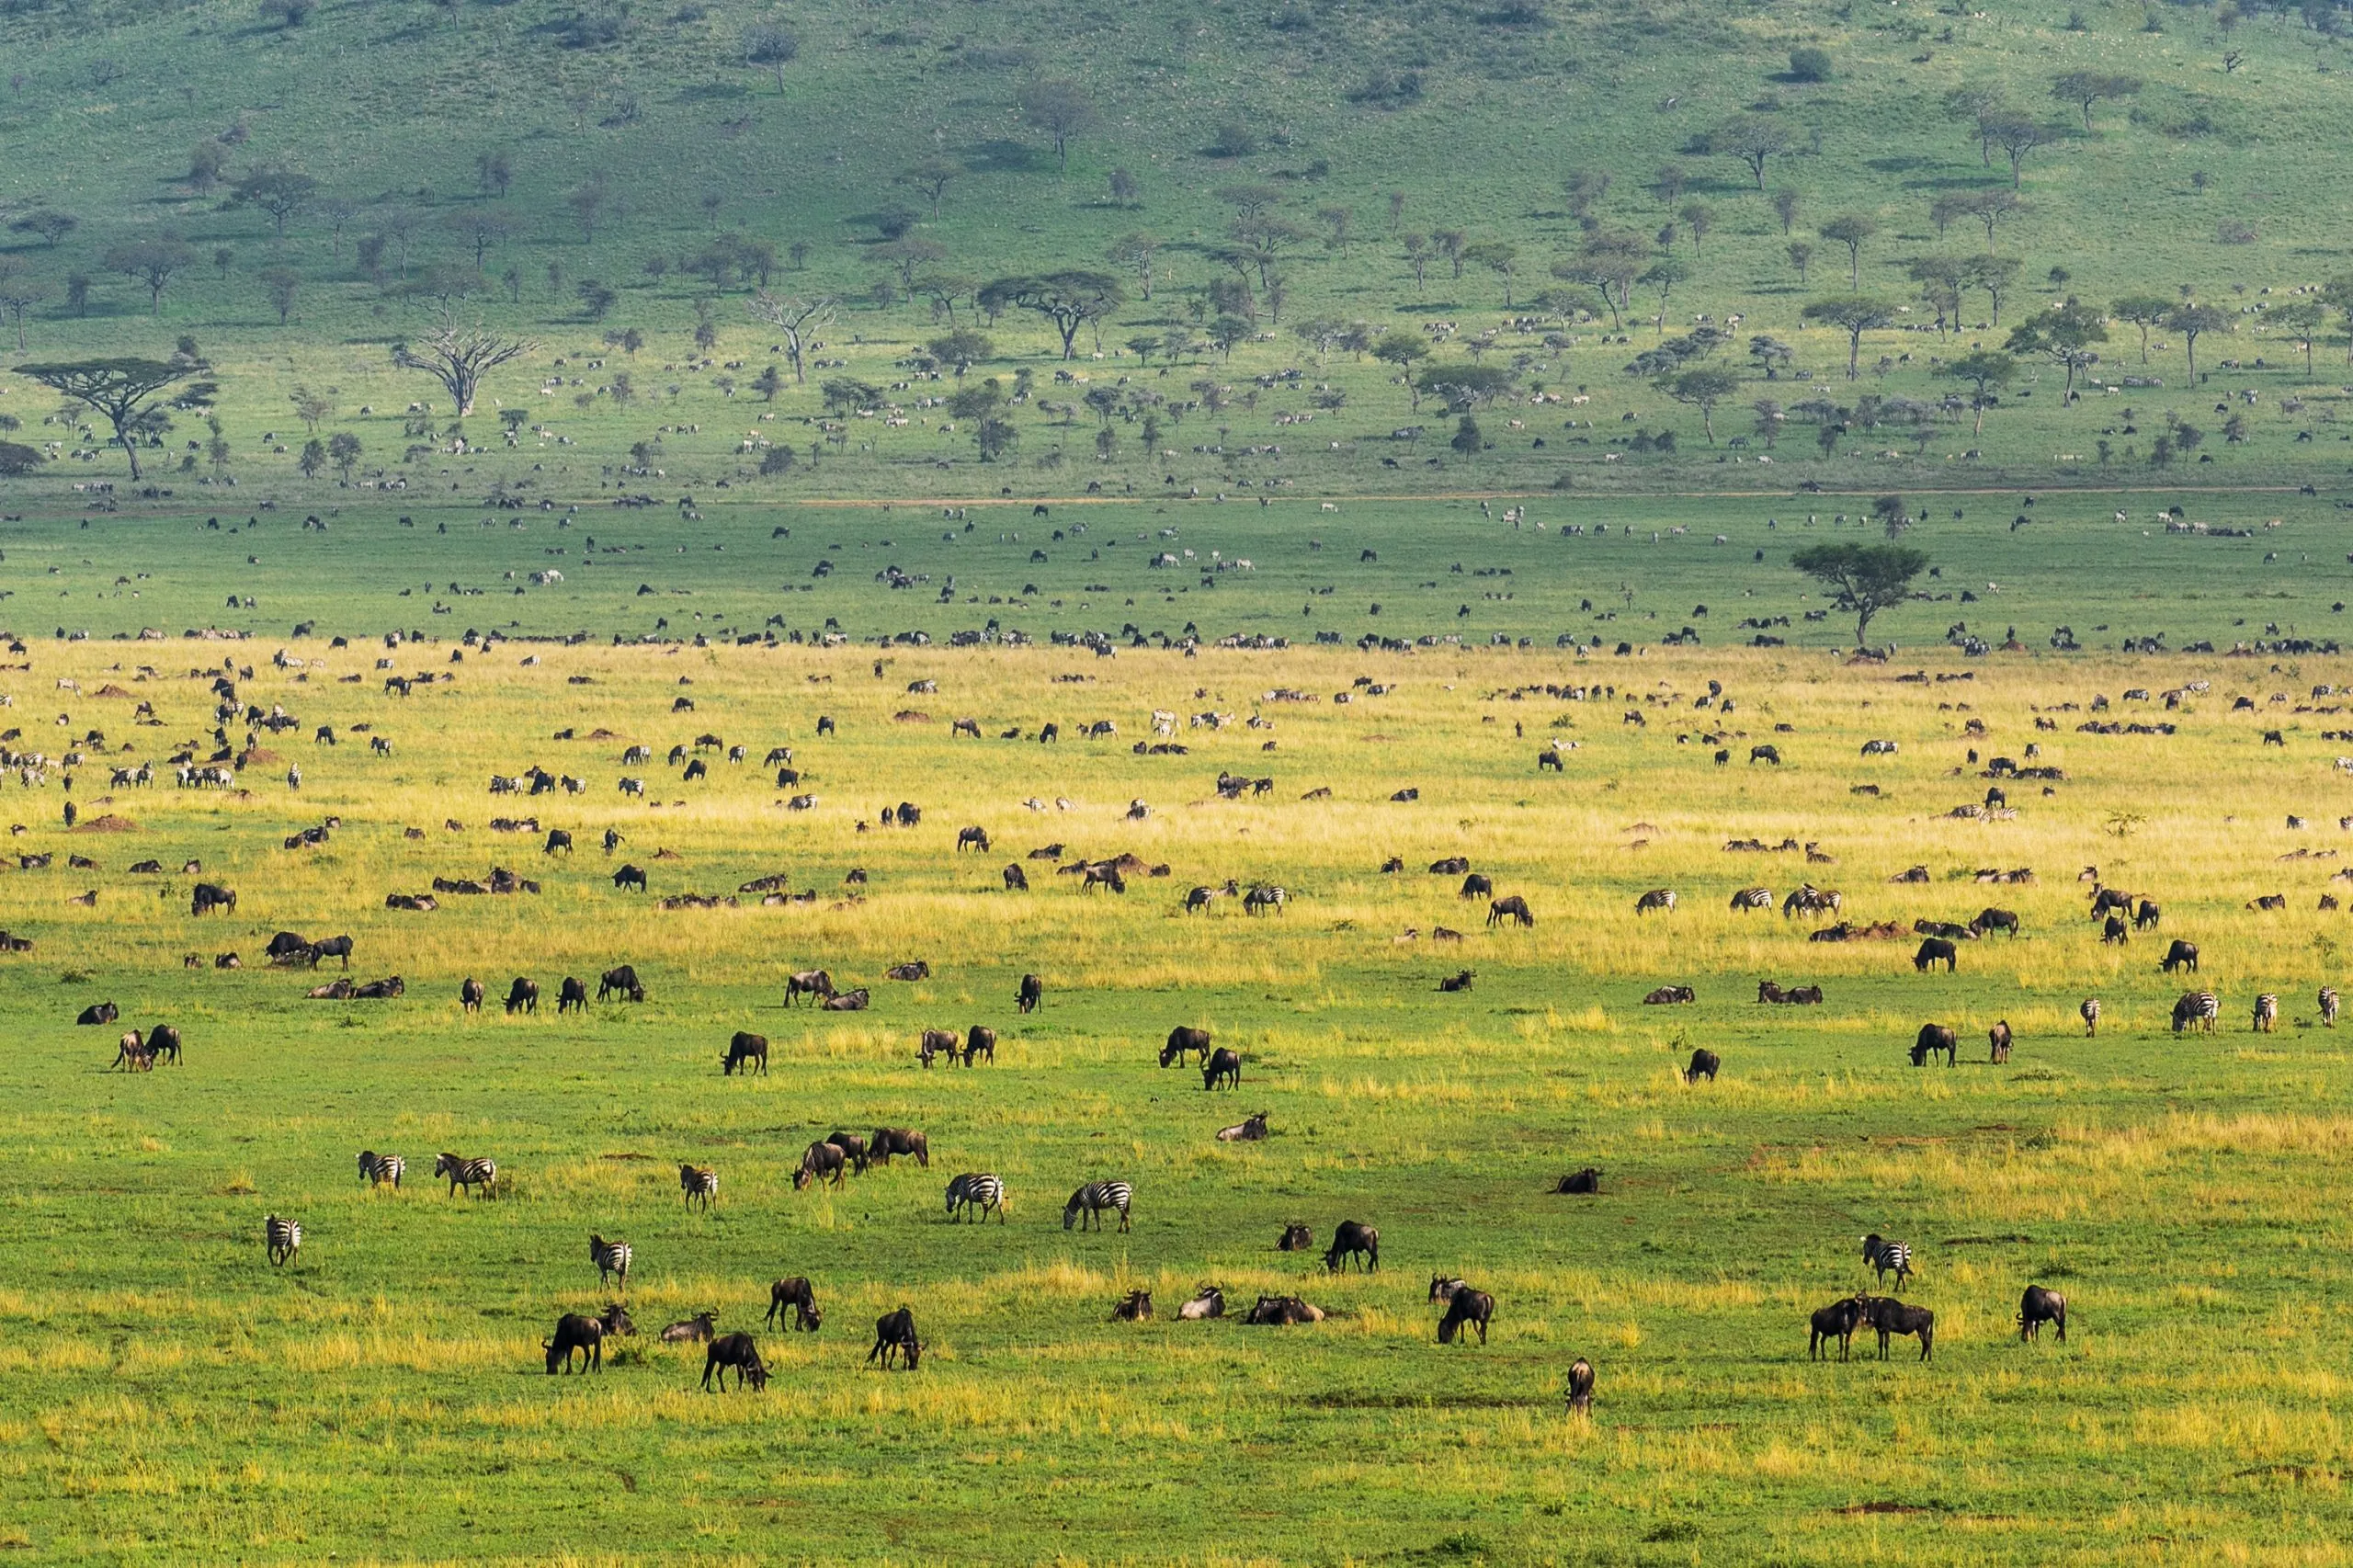 Serengetin kansallispuiston maisemat täynnä eläimiä